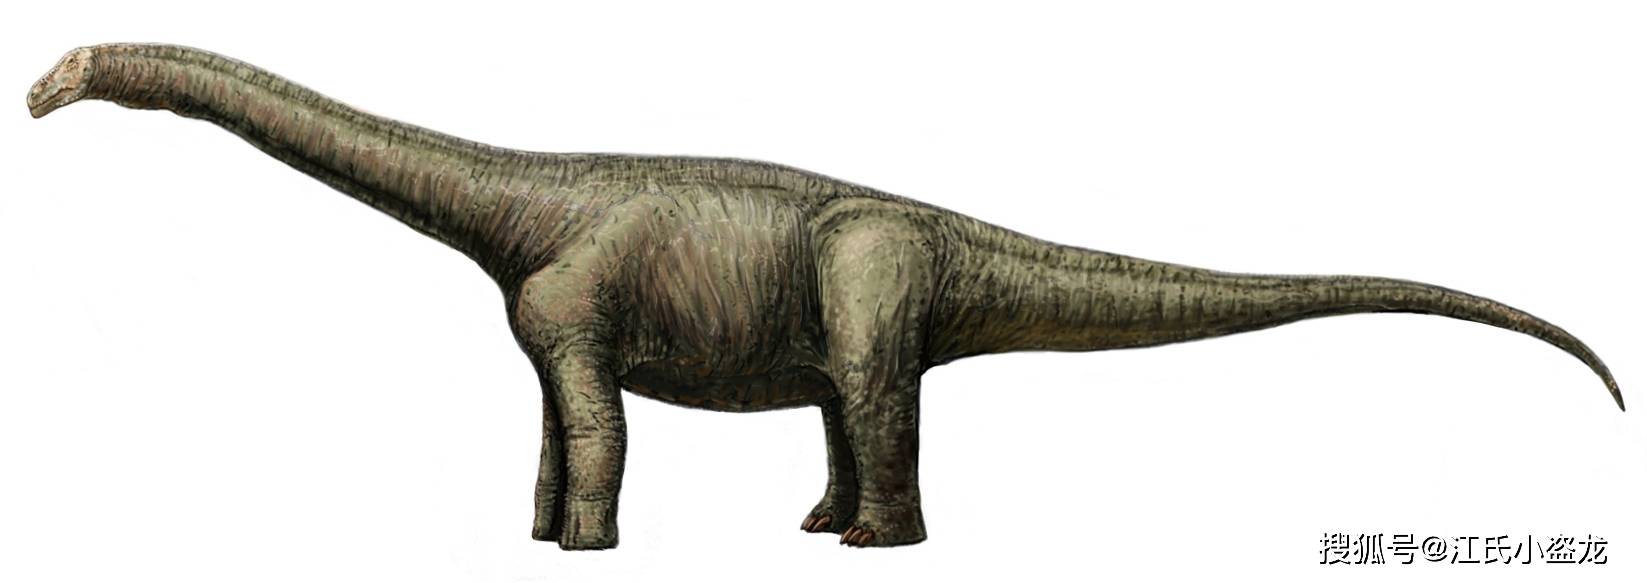 【恐龙王国】一块化石背后的长颈巨龙!